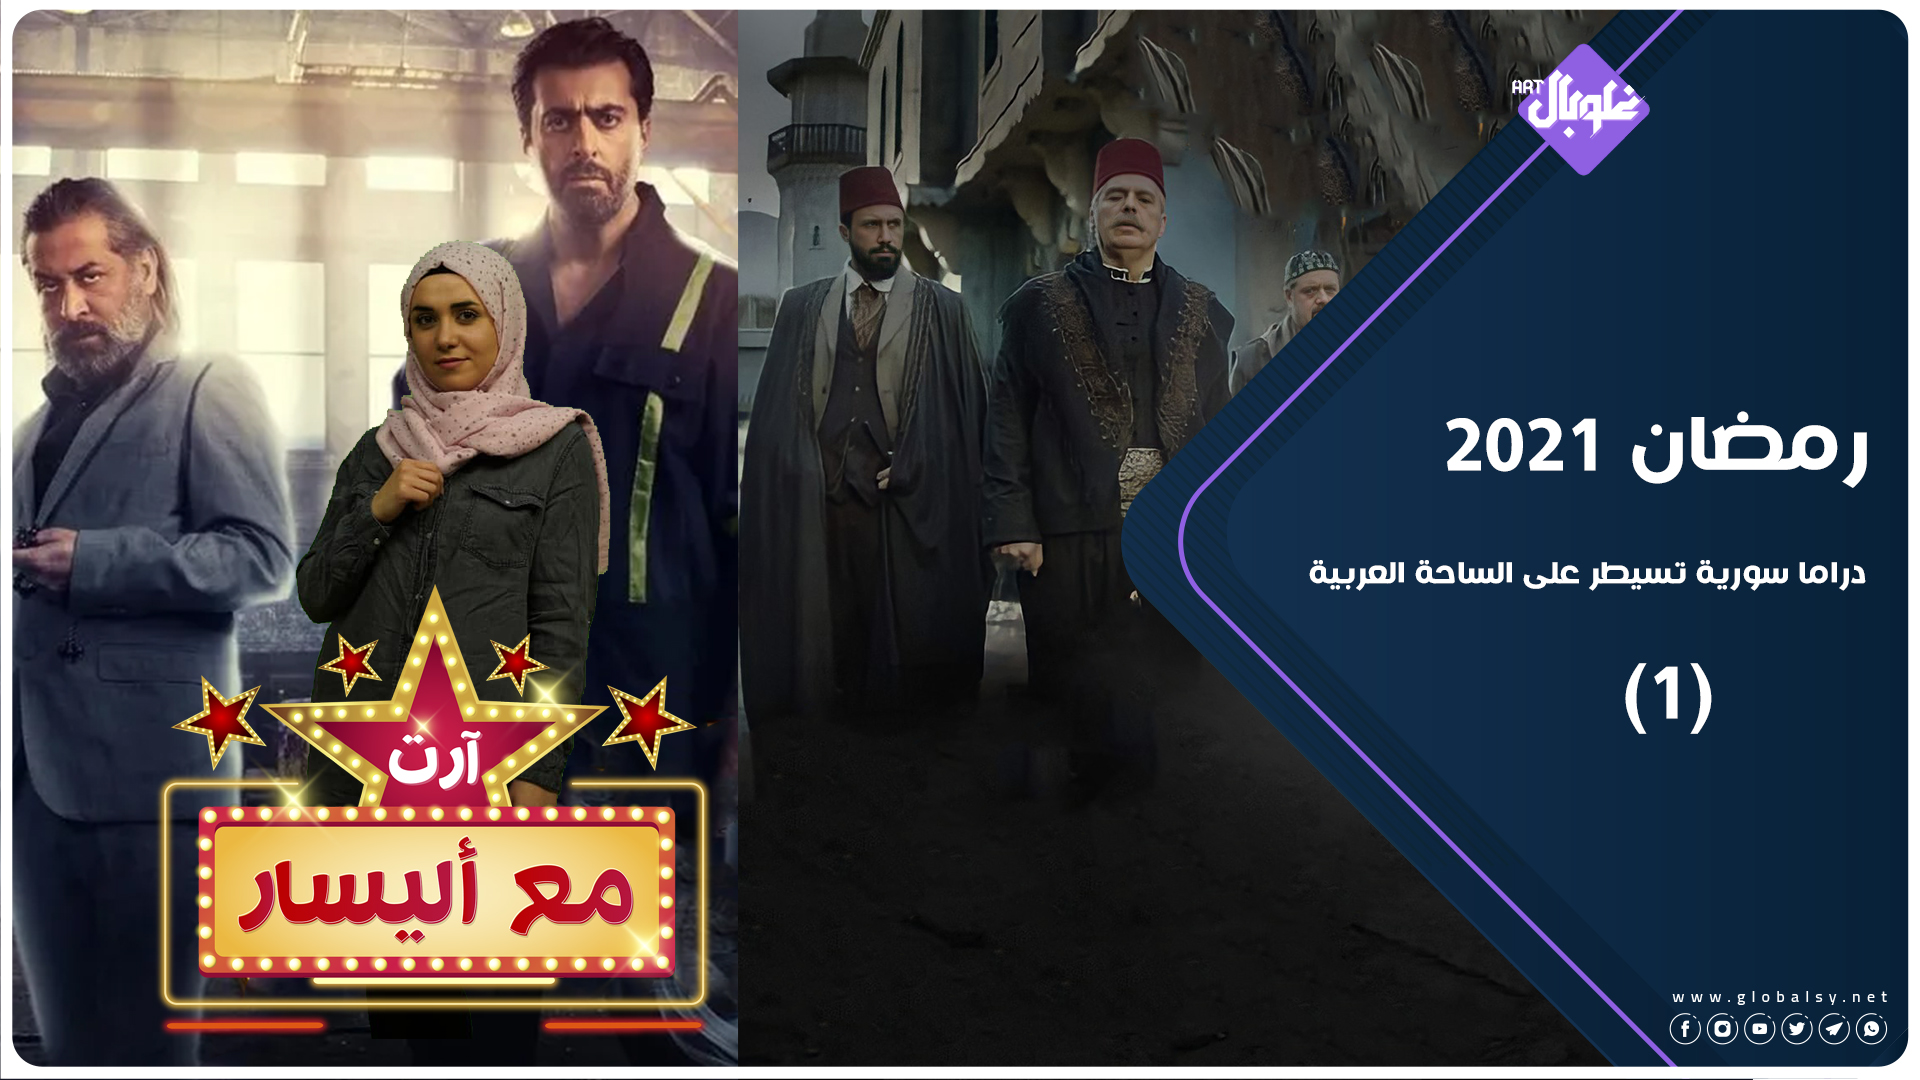 آرت مع إيليسار | الموسم الثاني| الحلقة 1: | المسلسلات السورية حاضرة بقوة في رمضان 2021 – الجزء الأول